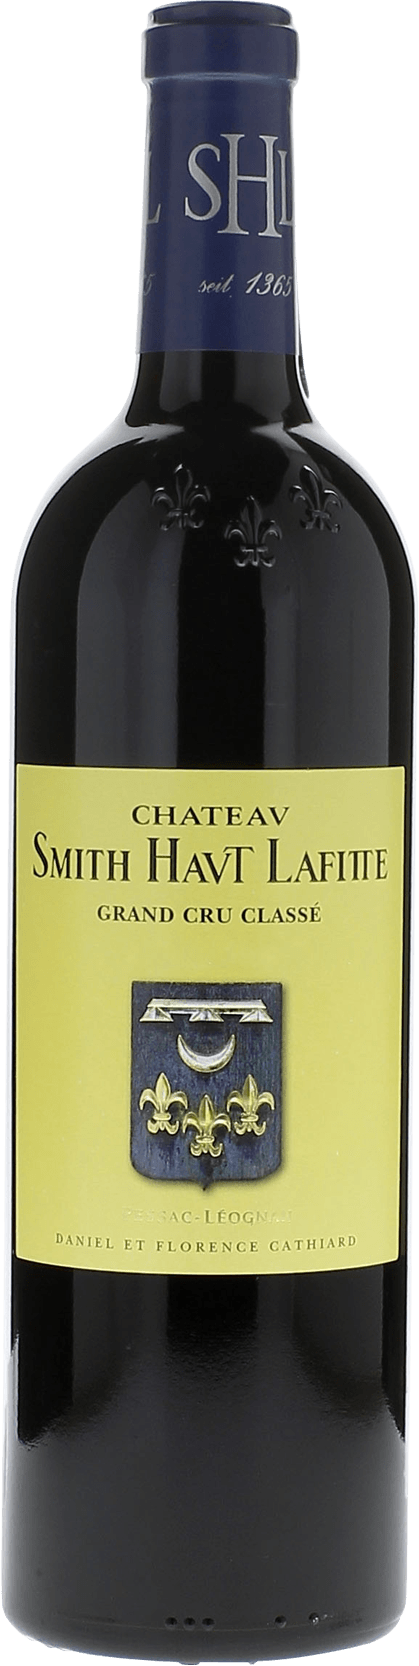 Smith haut lafitte 1986 Grand Cru Class Graves, Bordeaux rouge